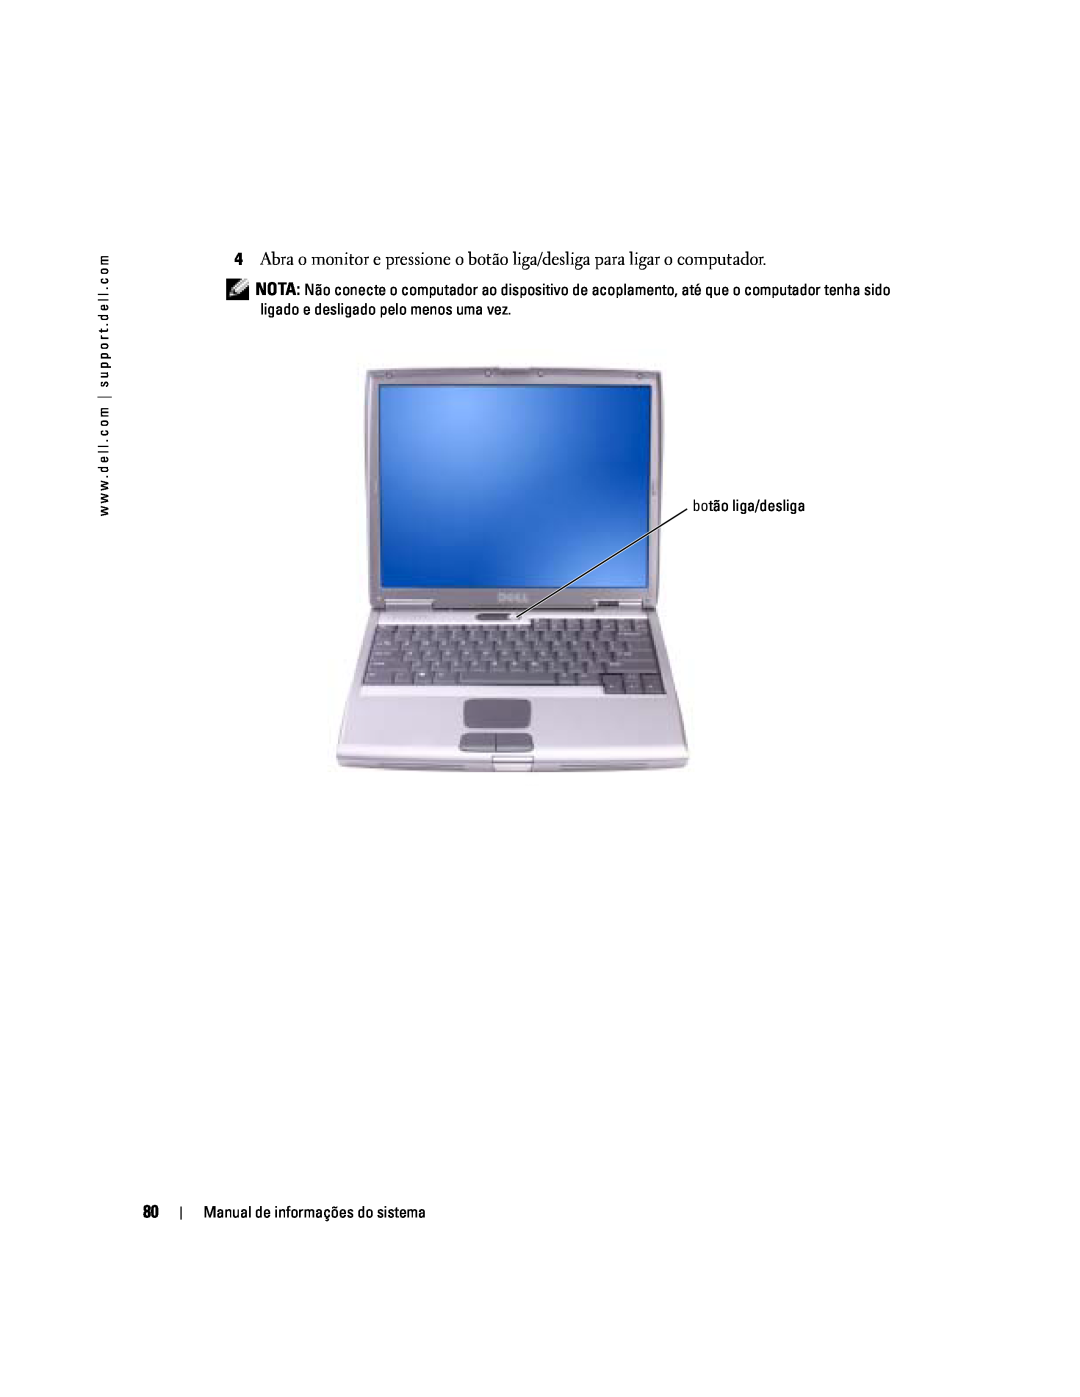 Dell D505 manual botão liga/desliga, Manual de informações do sistema 